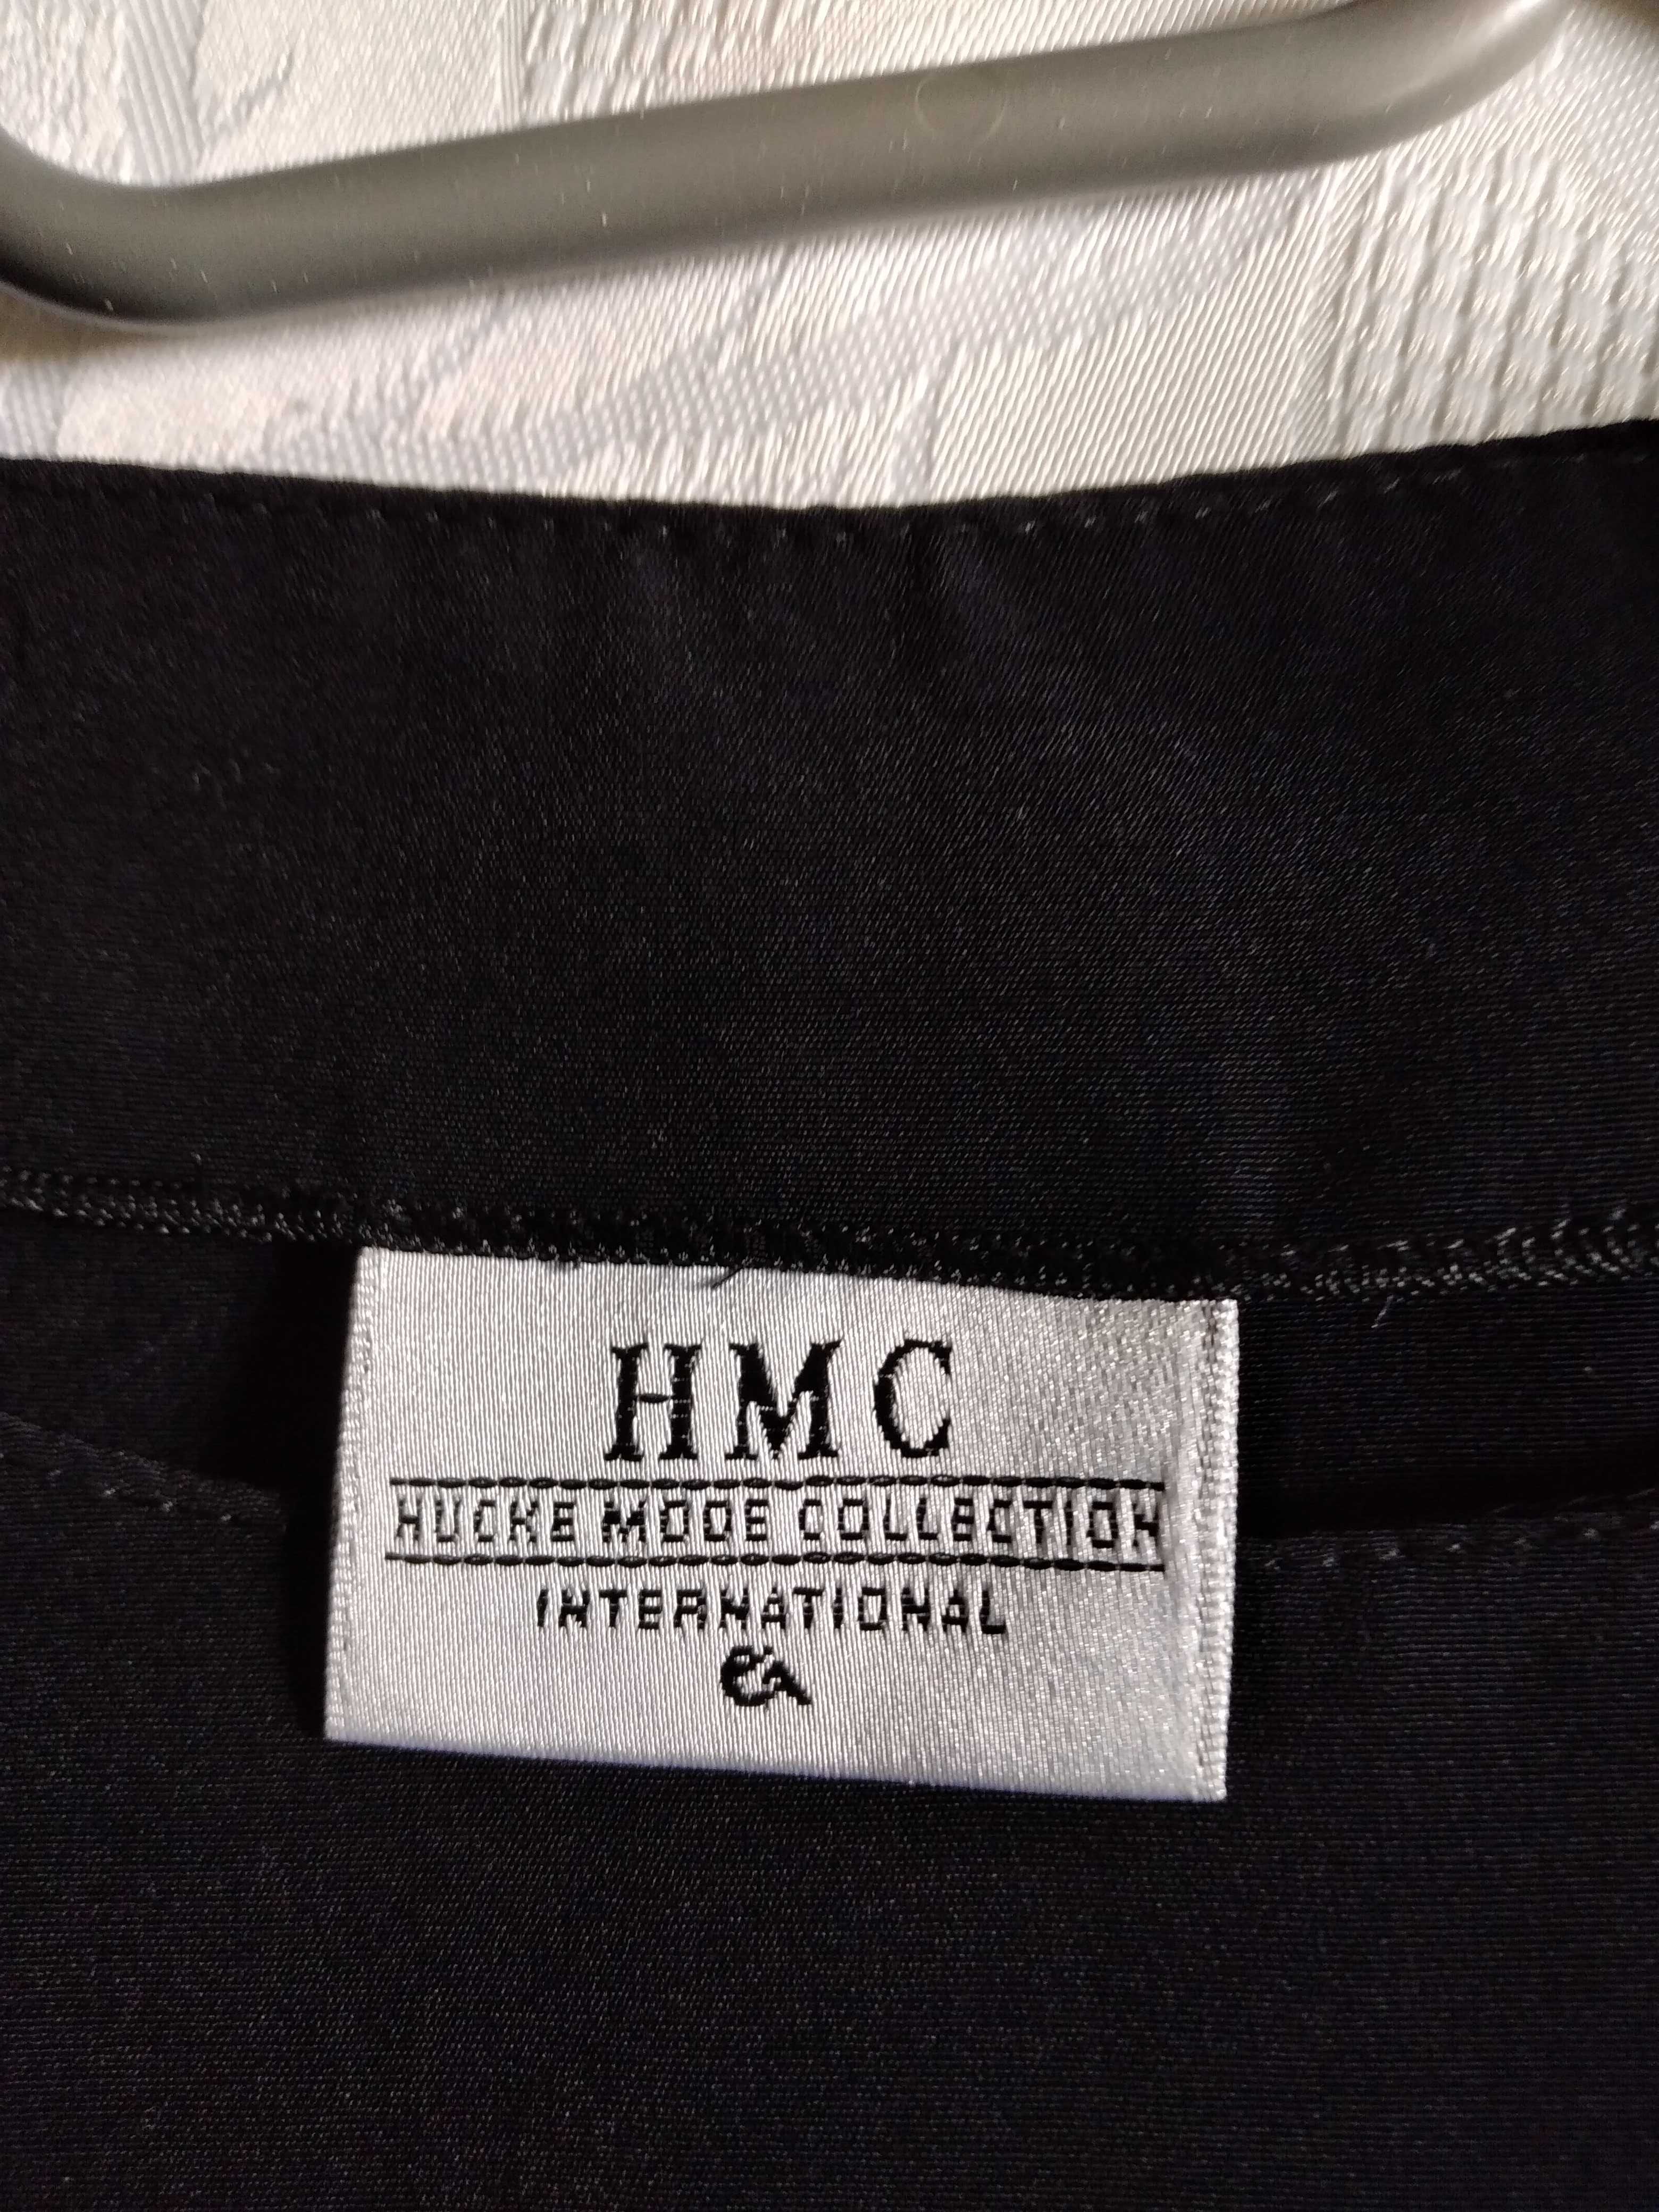 Atrakcyjna bluzka na lato HMC International R40 niegniotąca się.